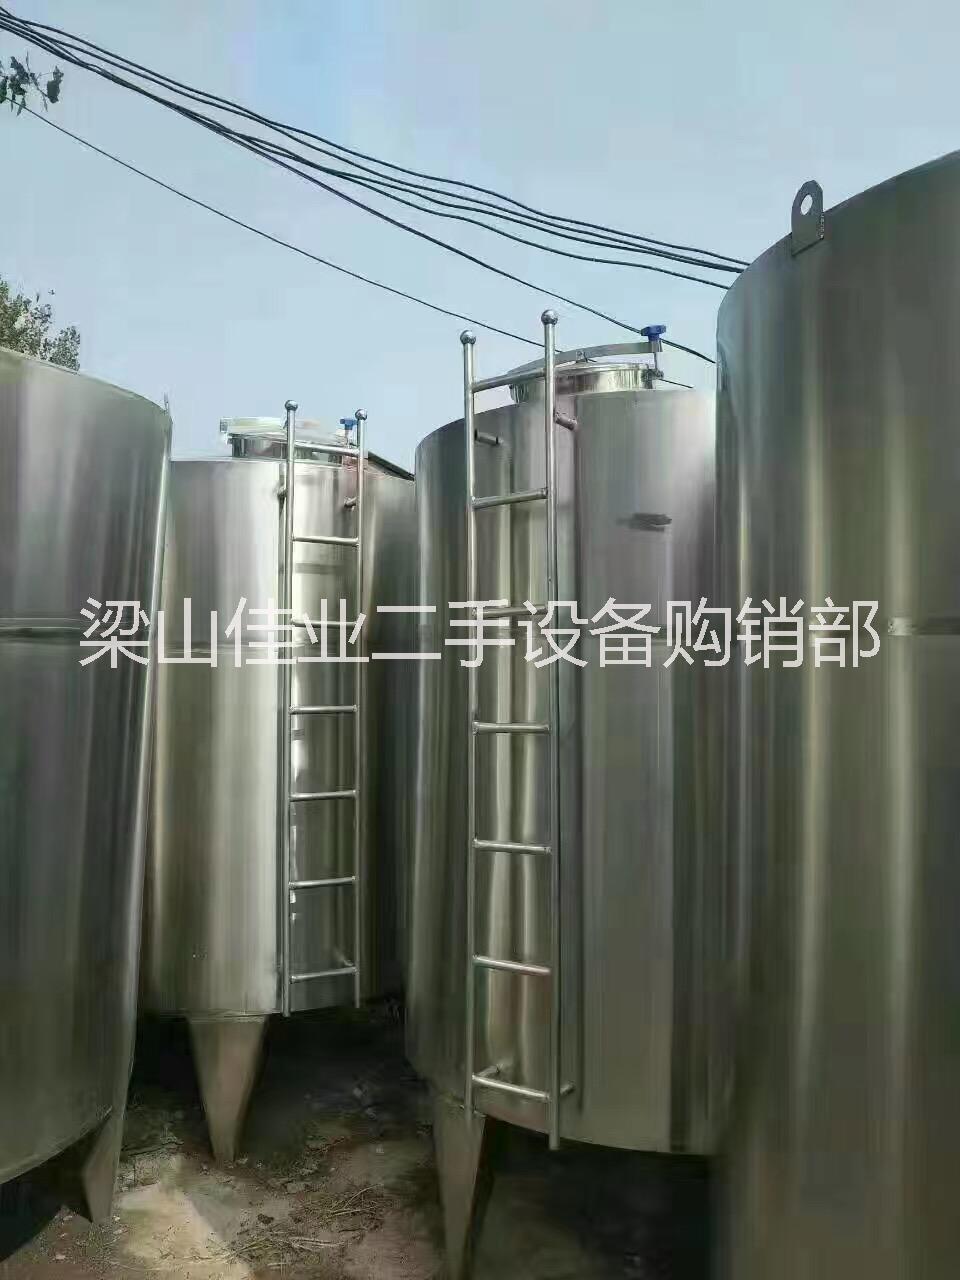 菏泽不锈钢搅拌罐生产厂家出售2T 3T 5T 10T 不锈钢搅拌罐，不锈钢储罐等